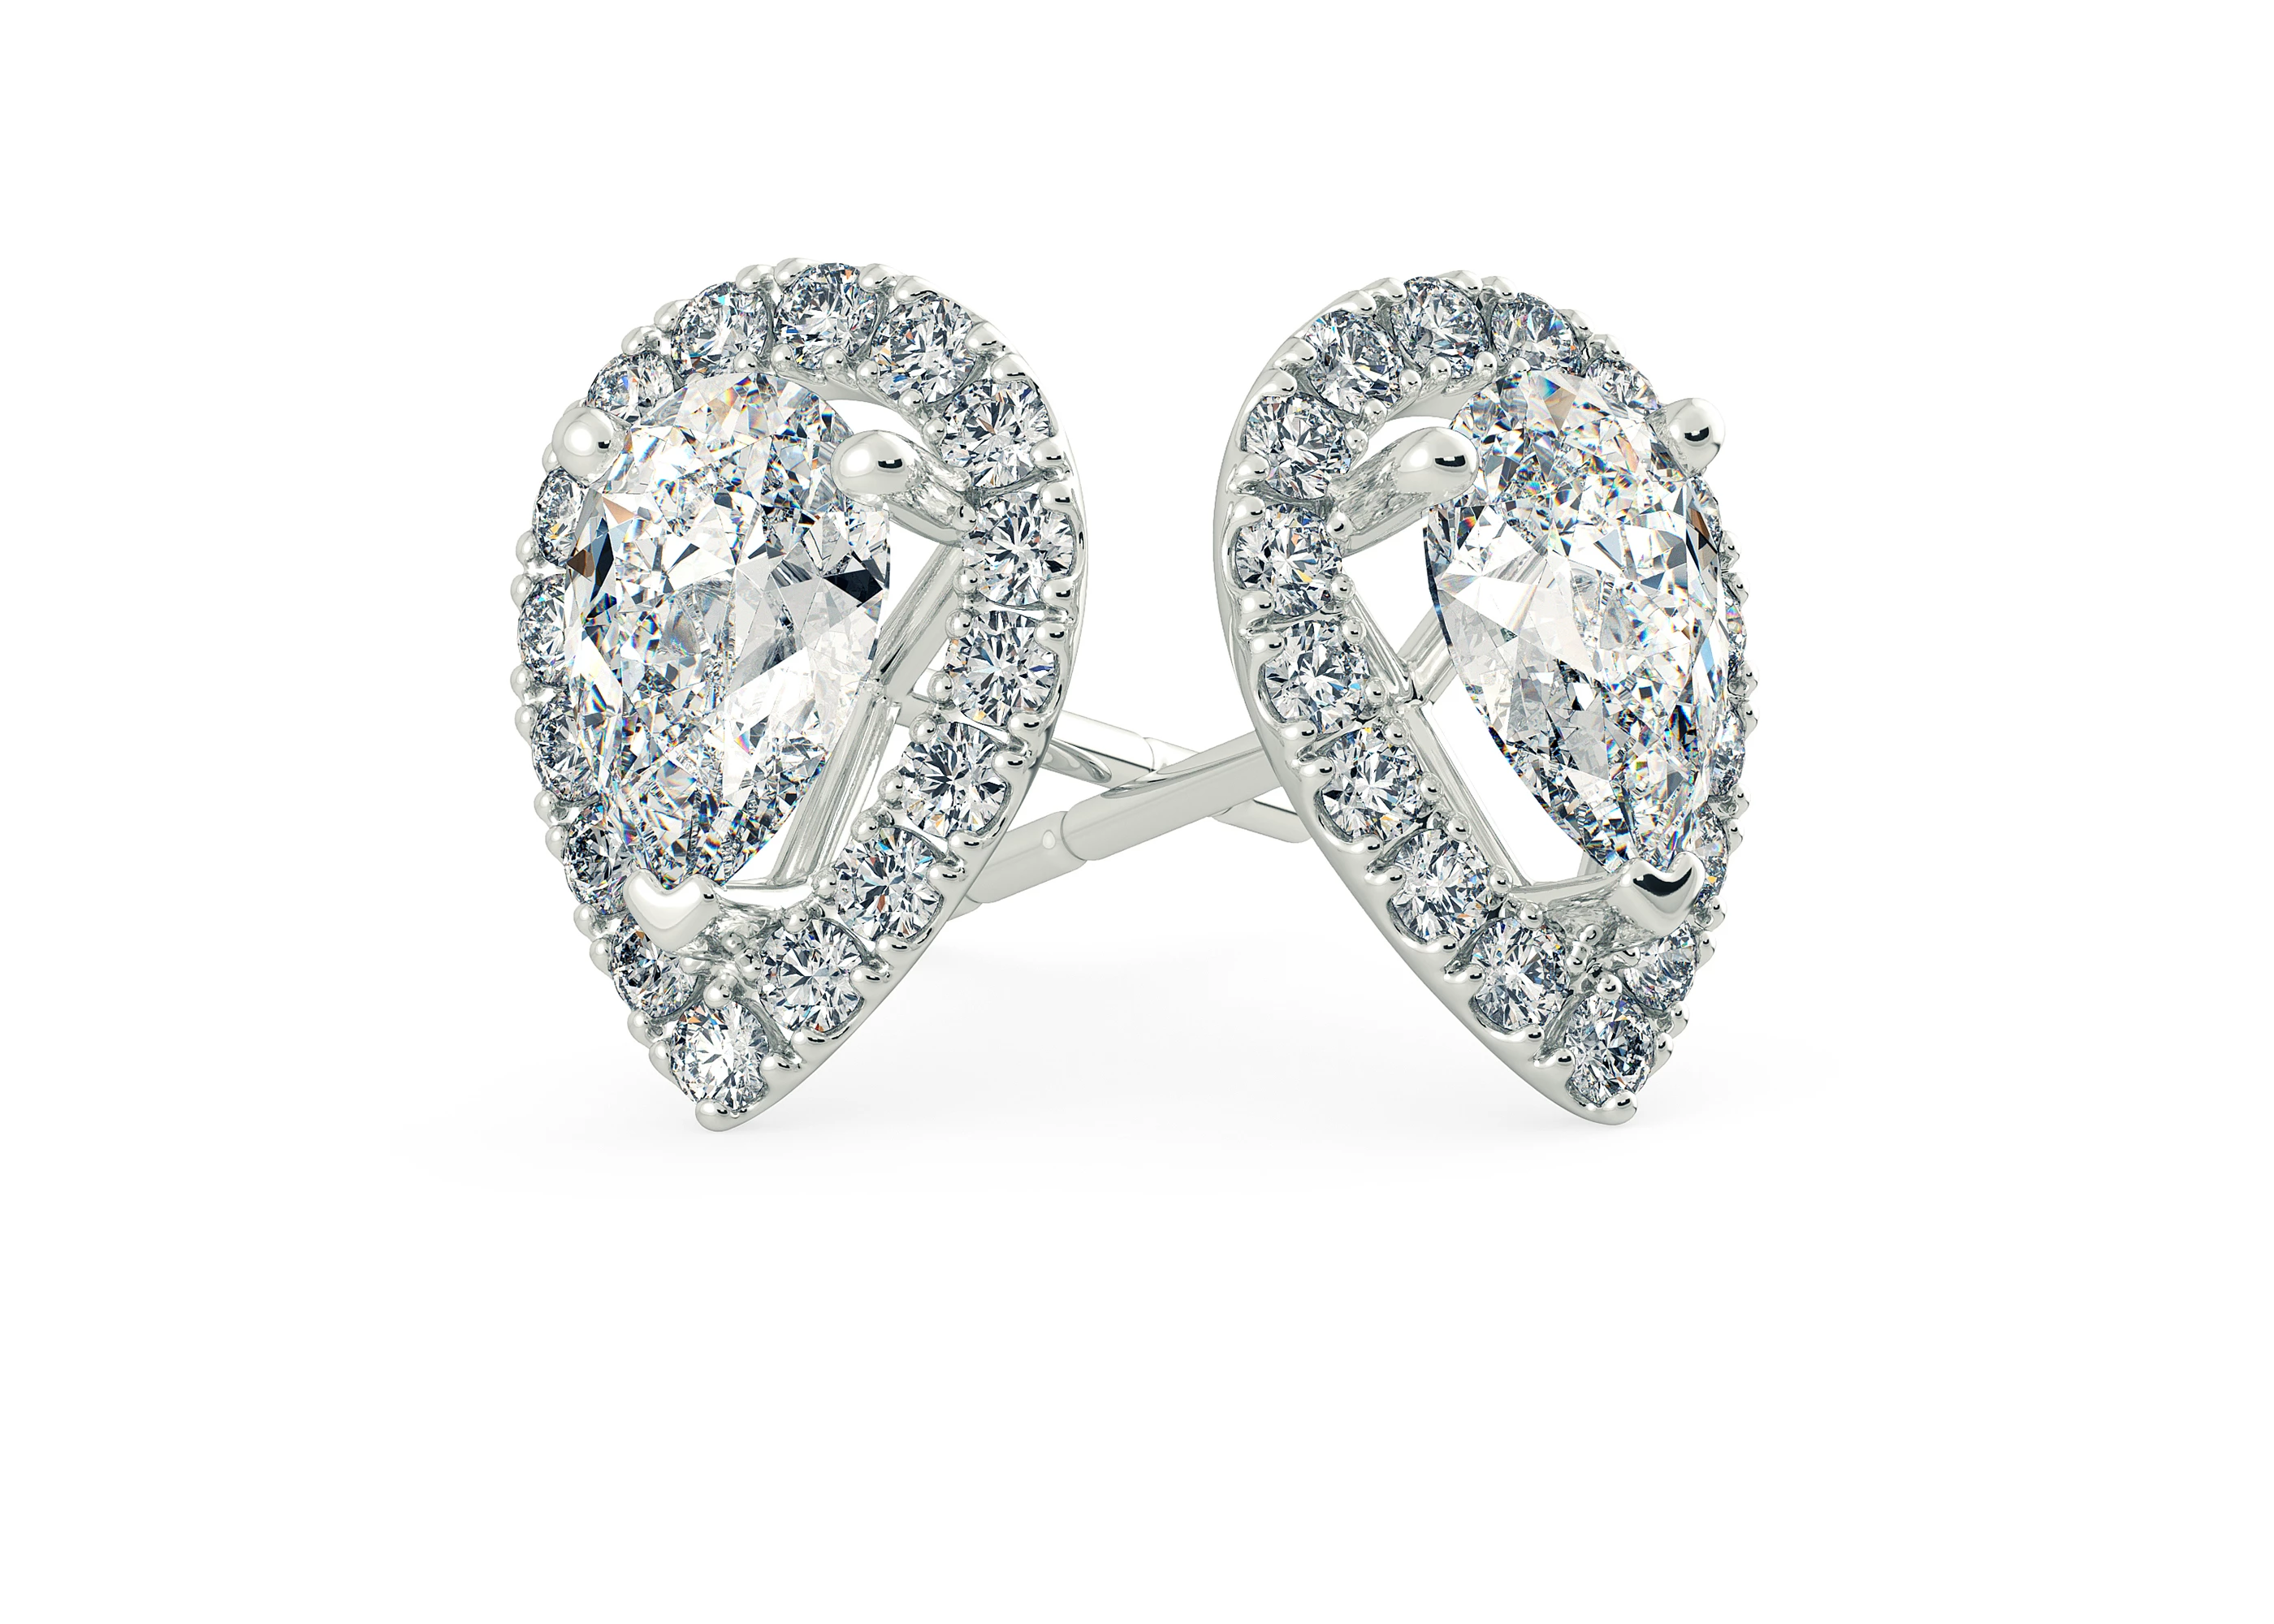 Bijou Pear Diamond Stud Earrings in Platinum with Screw Backs